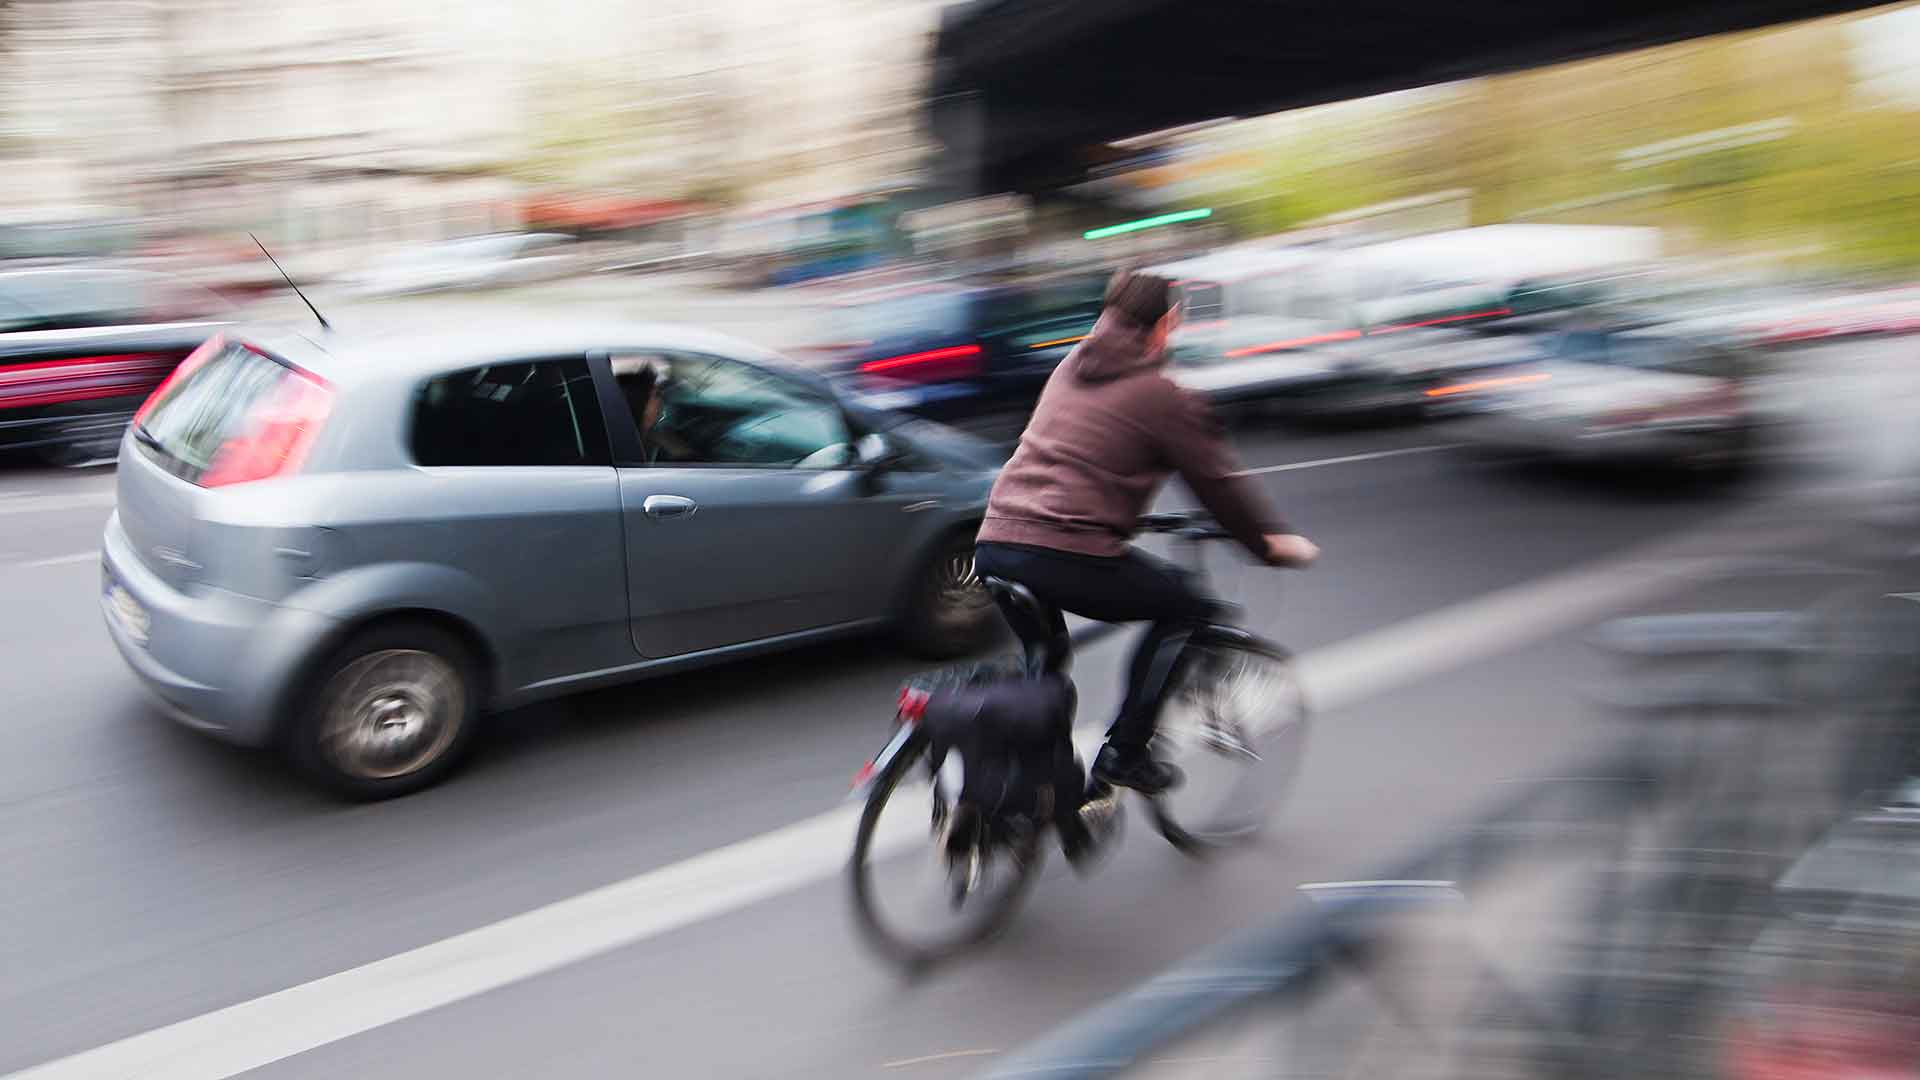 Cyclist in traffic